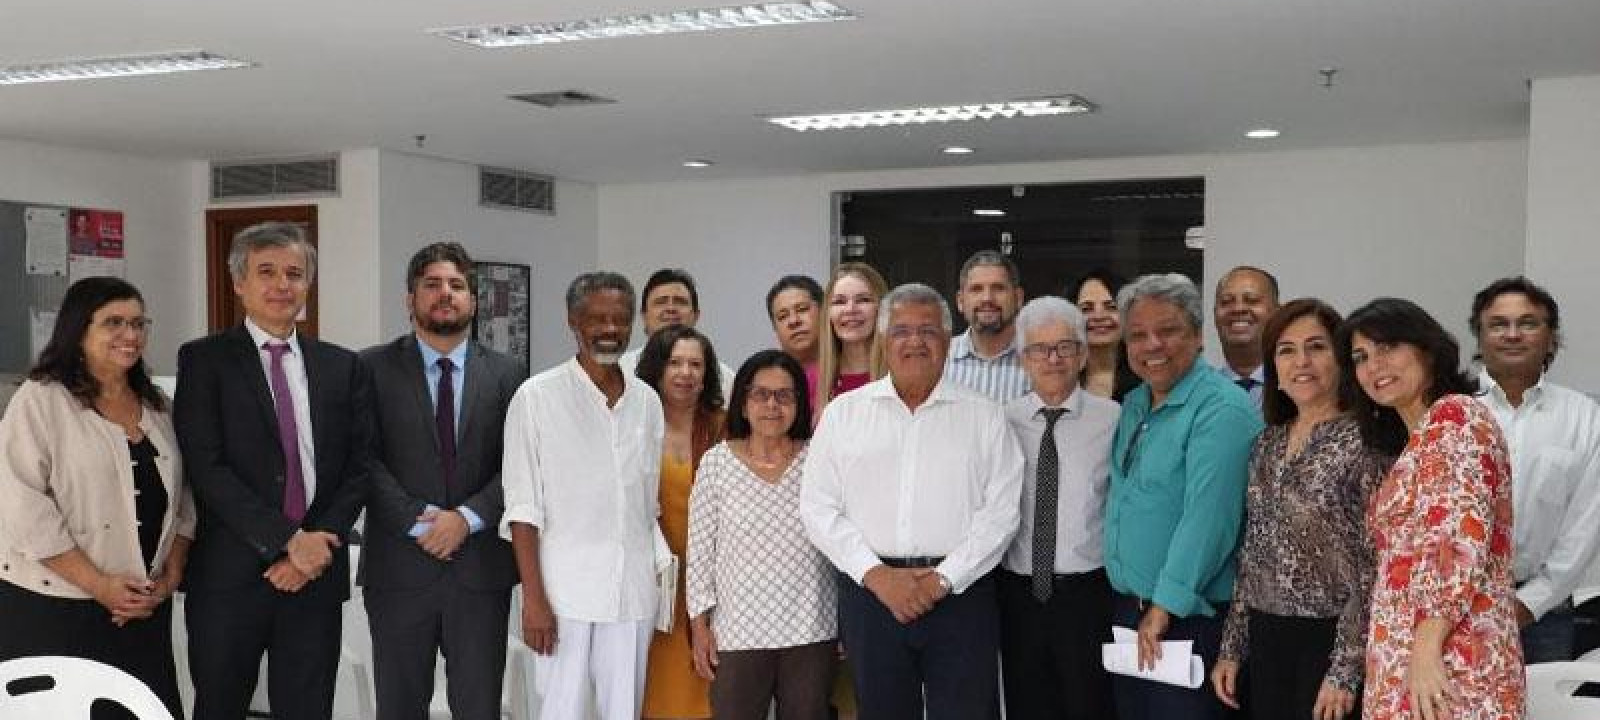 Sindifisco Nacional realiza “Café com Parlamentar” com deputado federal Bacelar (PV-BA)